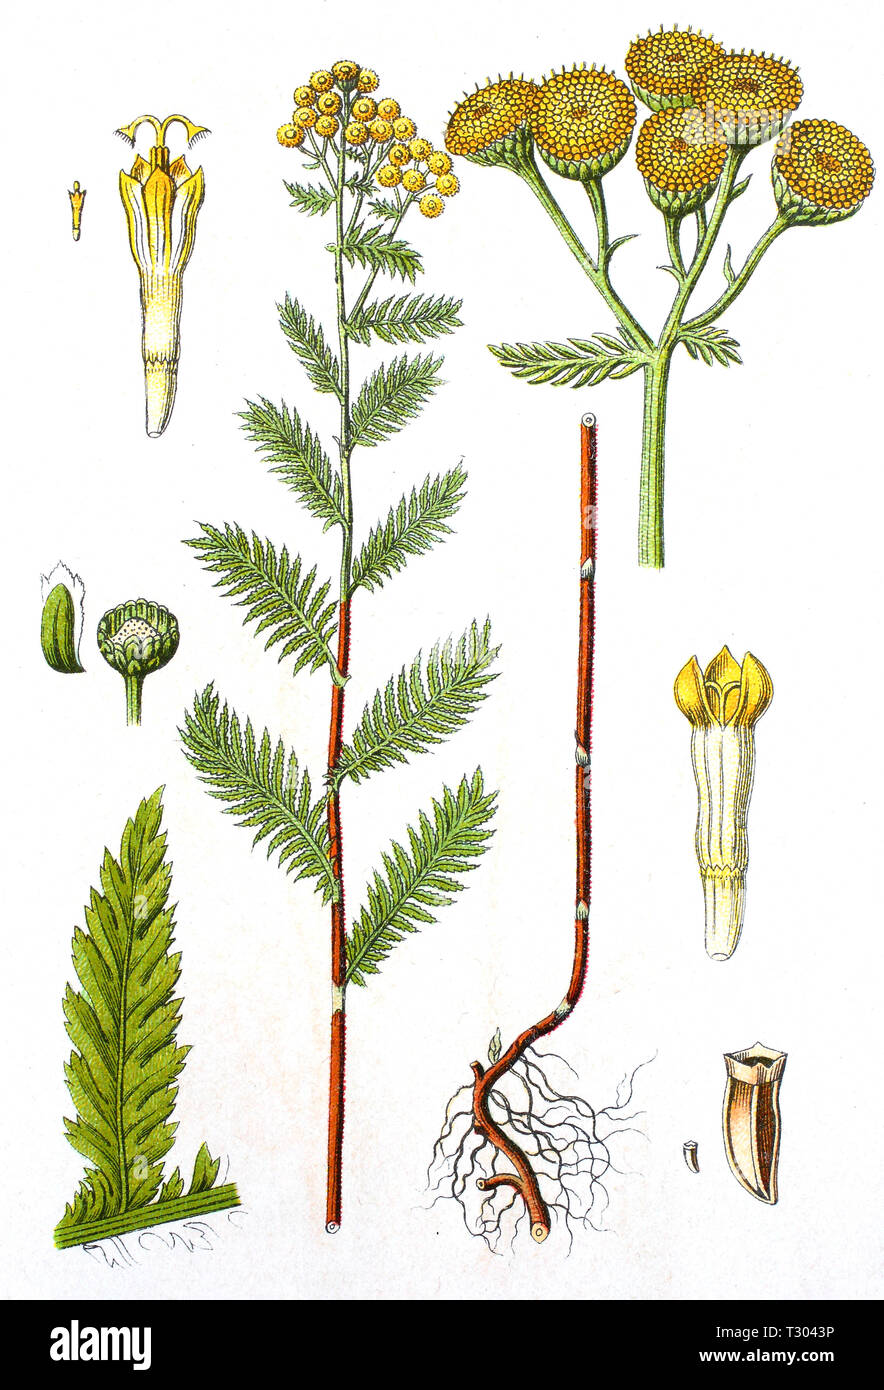 Amélioration numérique reproduction d'une illustration de, Rainfarn, Tanacetum vulgare, tanaisie, à partir d'un tirage original du 19e siècle Banque D'Images